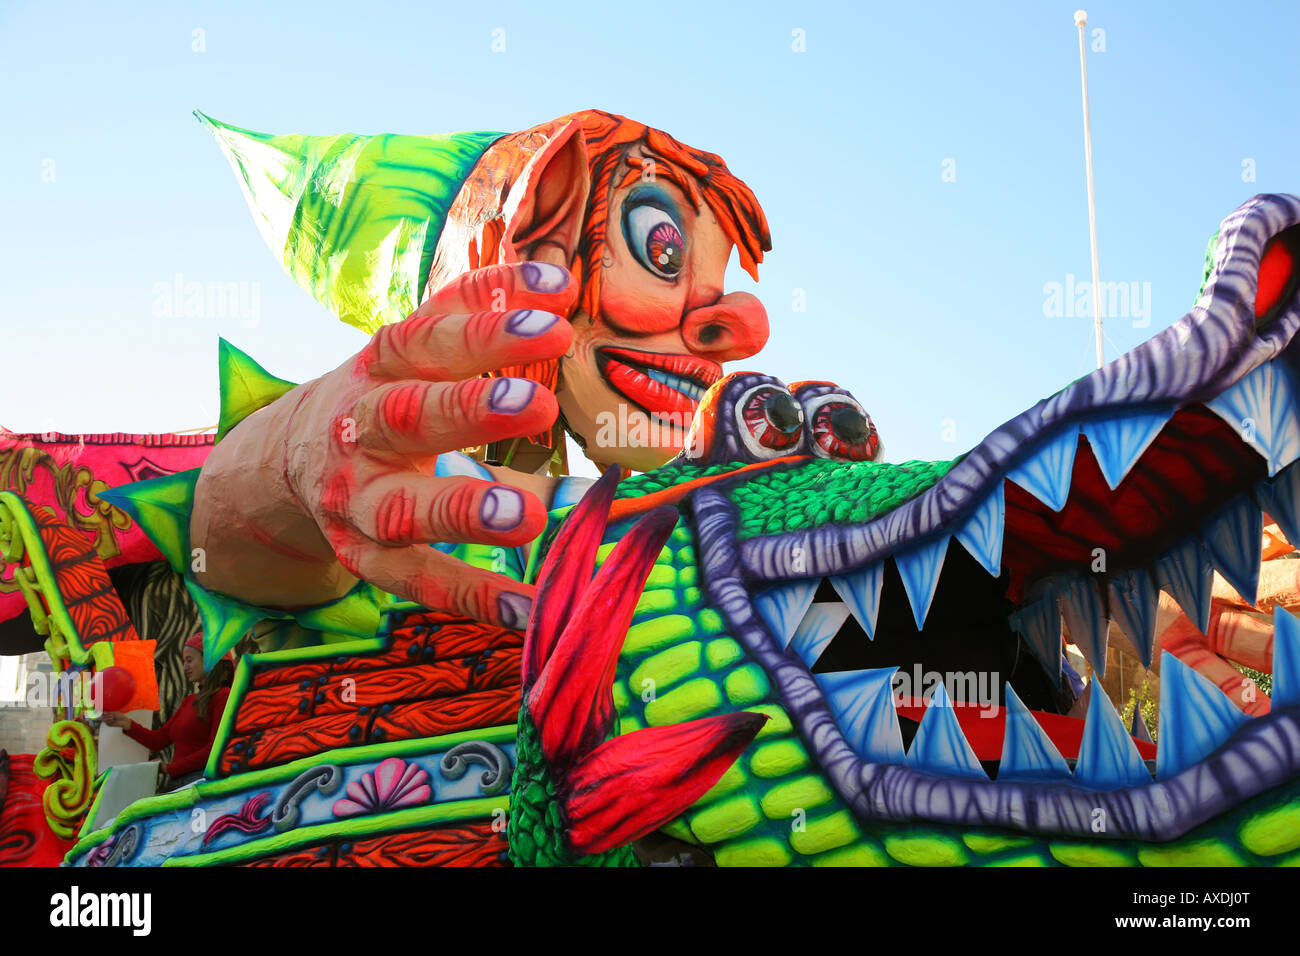 Malta Gozo carnival festival Stock Photo